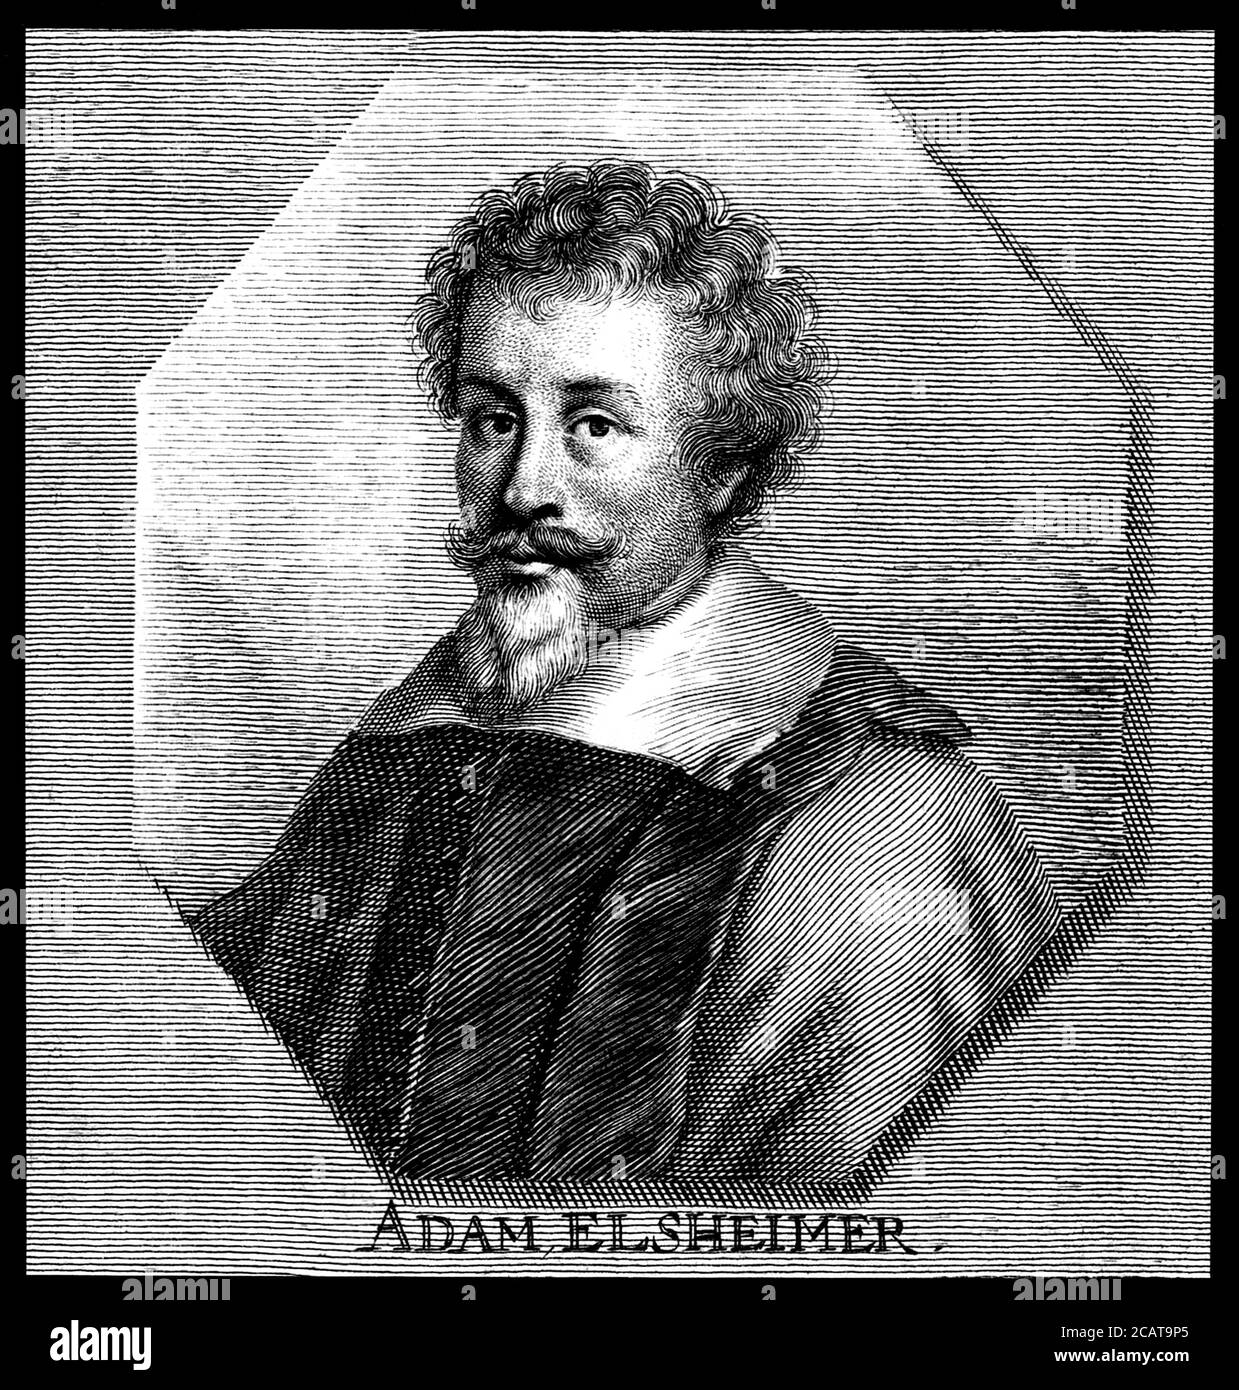 1600 c, ALLEMAGNE : le peintre allemand ADAM ELSHEIMER ( 1578 - 1610 ).  Gravure d'un artiste inconnu , pubblies